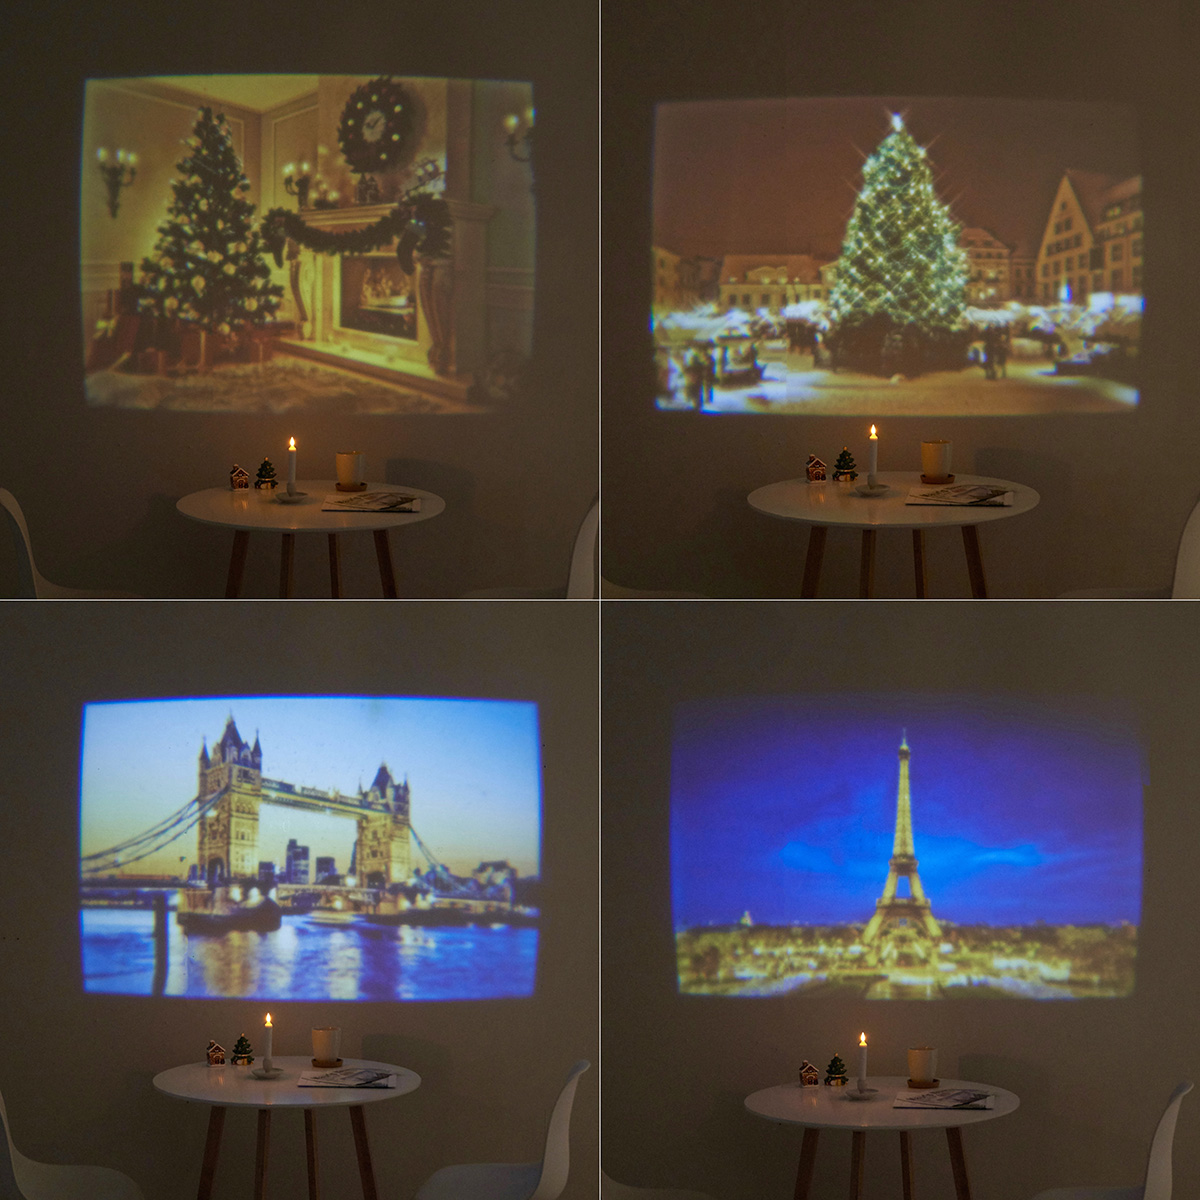 크리스마스 포인트 미니빔 프로젝터 조명 유럽 트리 파티 인테리어소품 선물